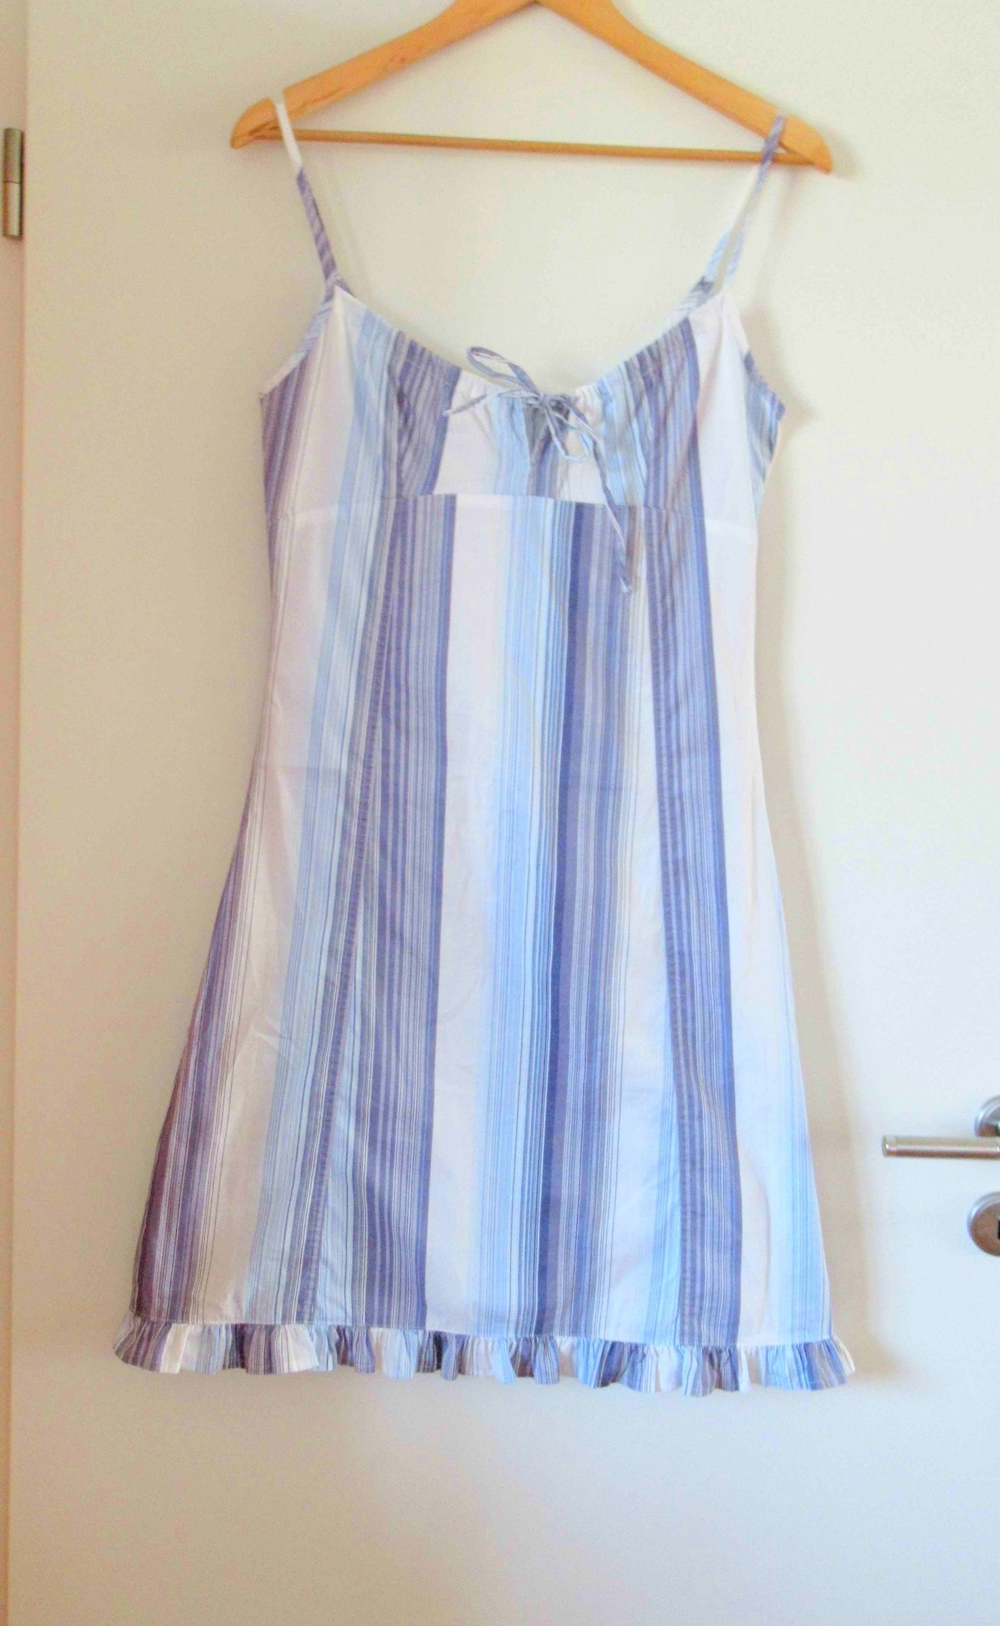 NEUWERTIGEs blauweiß gestreiftes Kleid Größe M